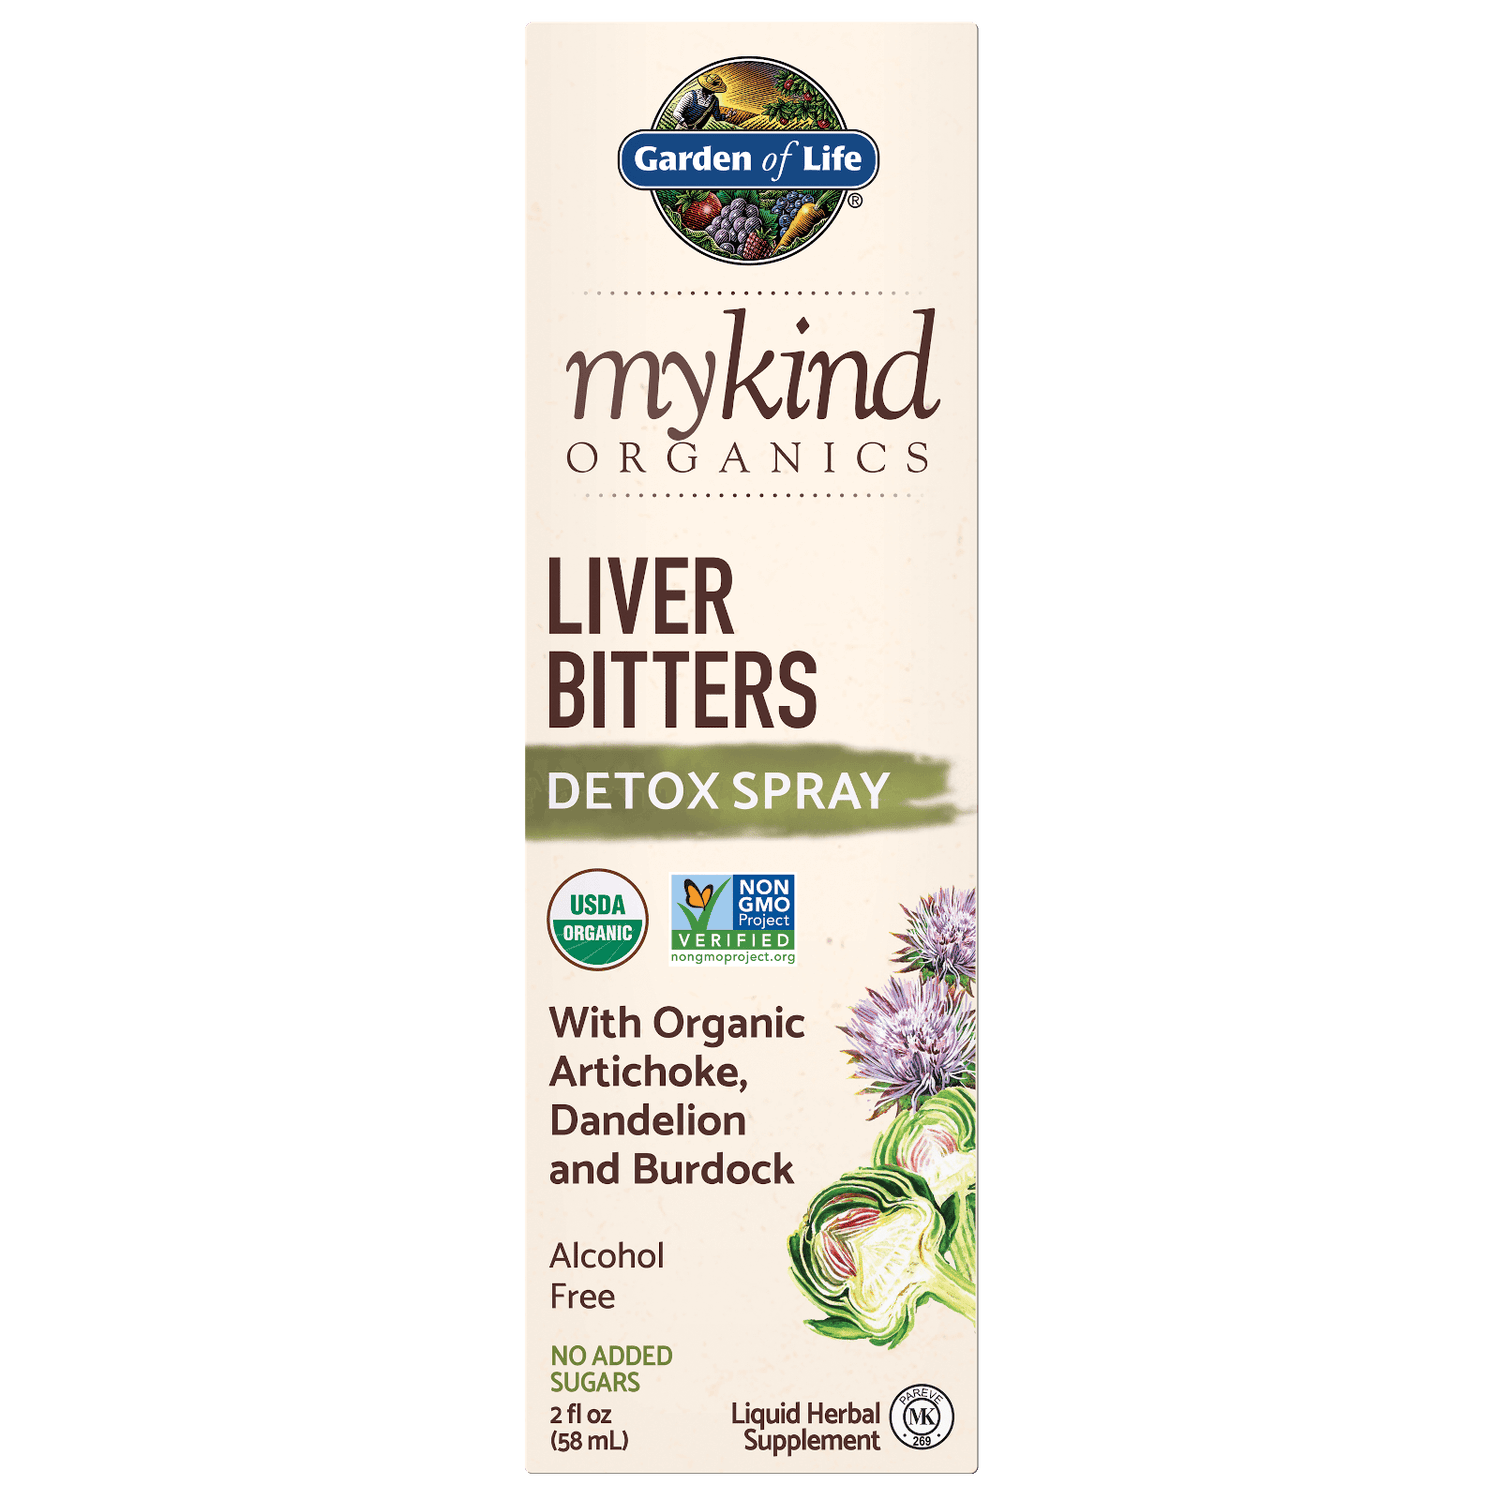 mykind Organics Детокс-спрей для печени — 58 мл